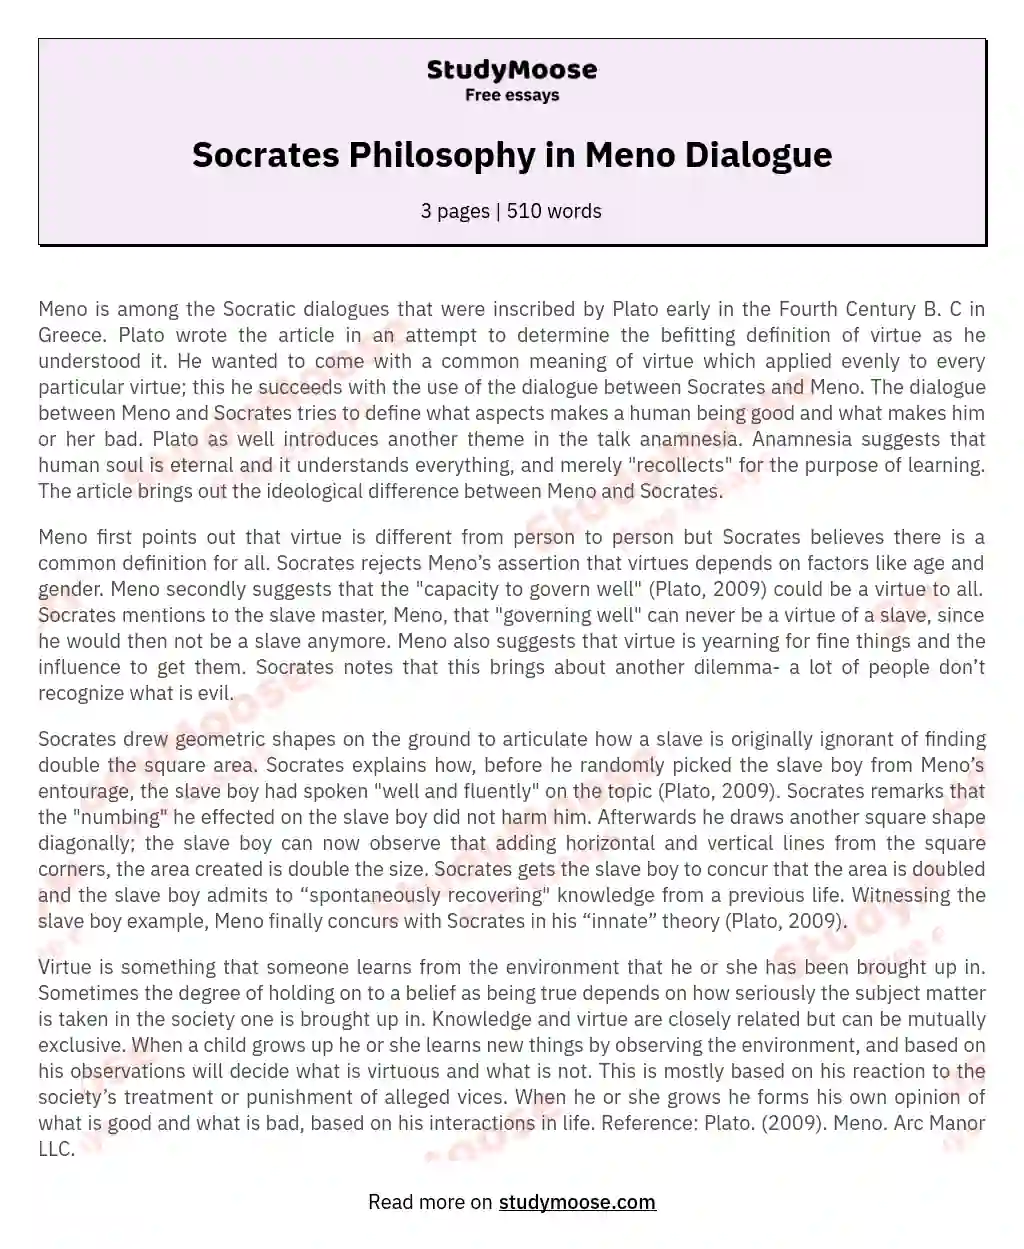 Socrates Philosophy in Meno Dialogue